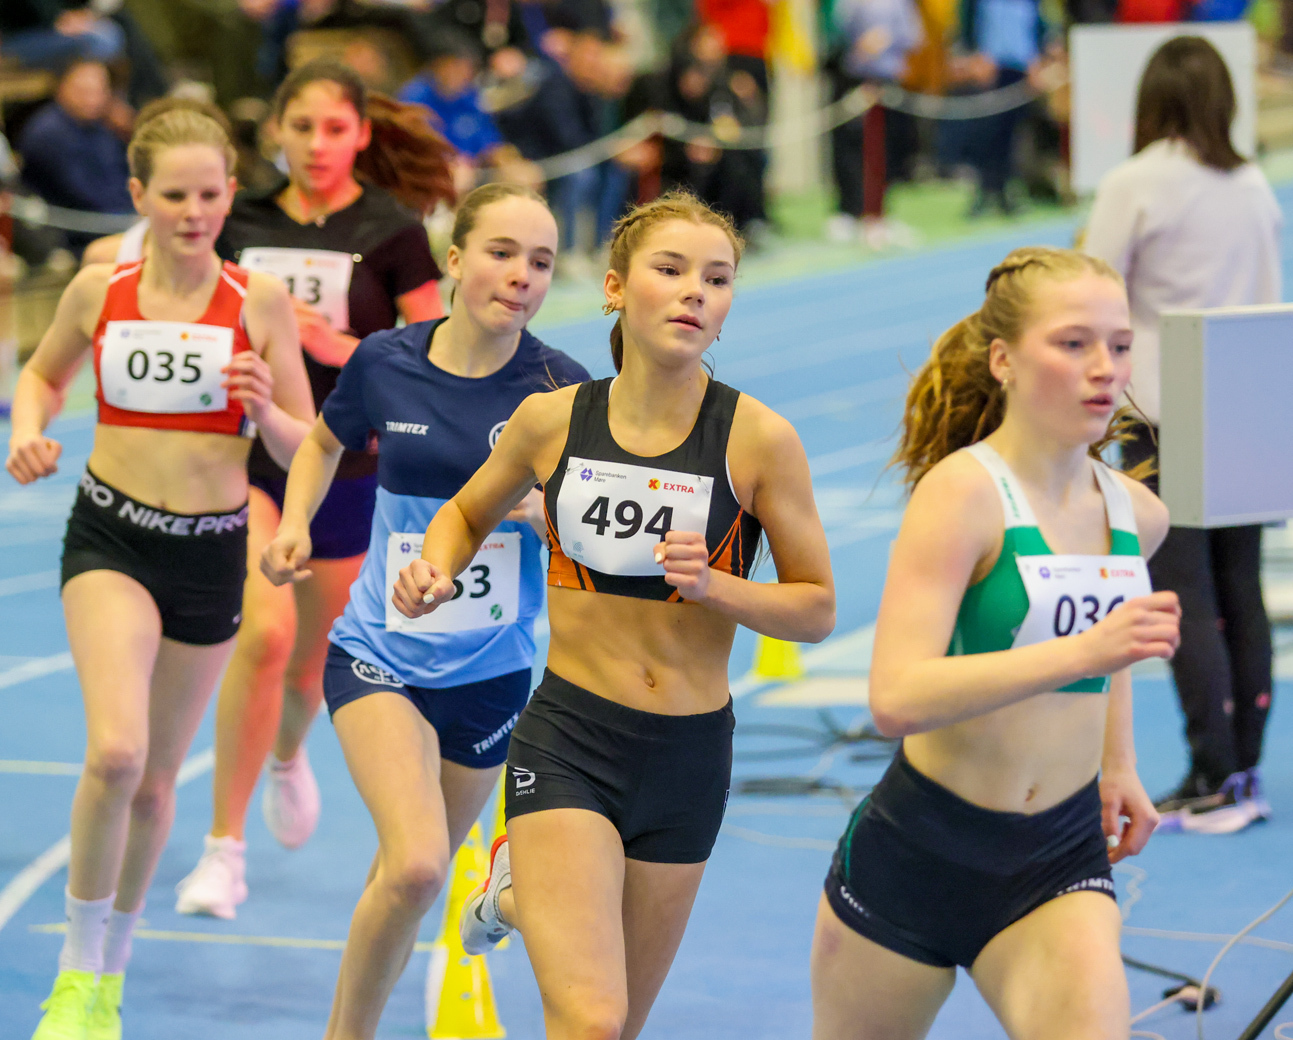 Seks jenter i 800 m-feltet i 15-årsklassen med Aase Ulstein i front fra start.jpg